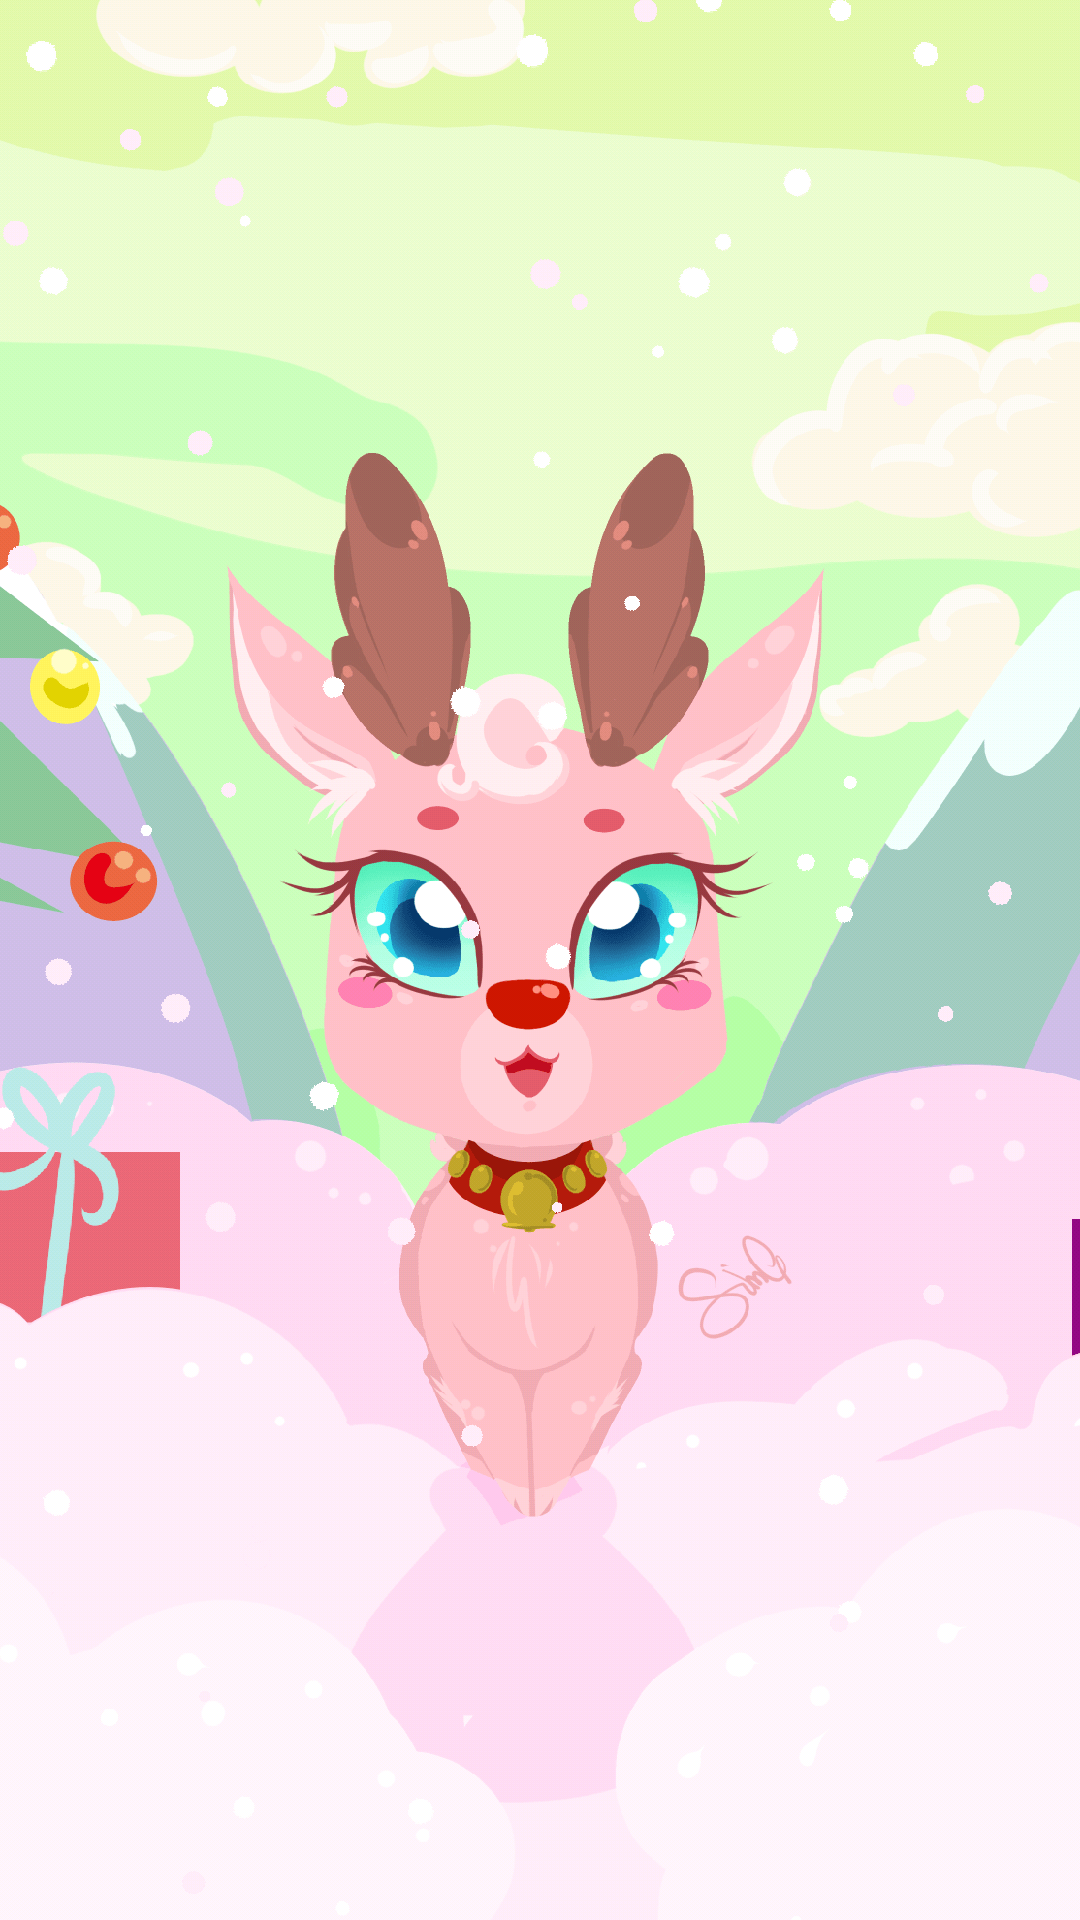 Cute Christmas Deer Wallpapers - Top Free Cute Christmas Deer ...